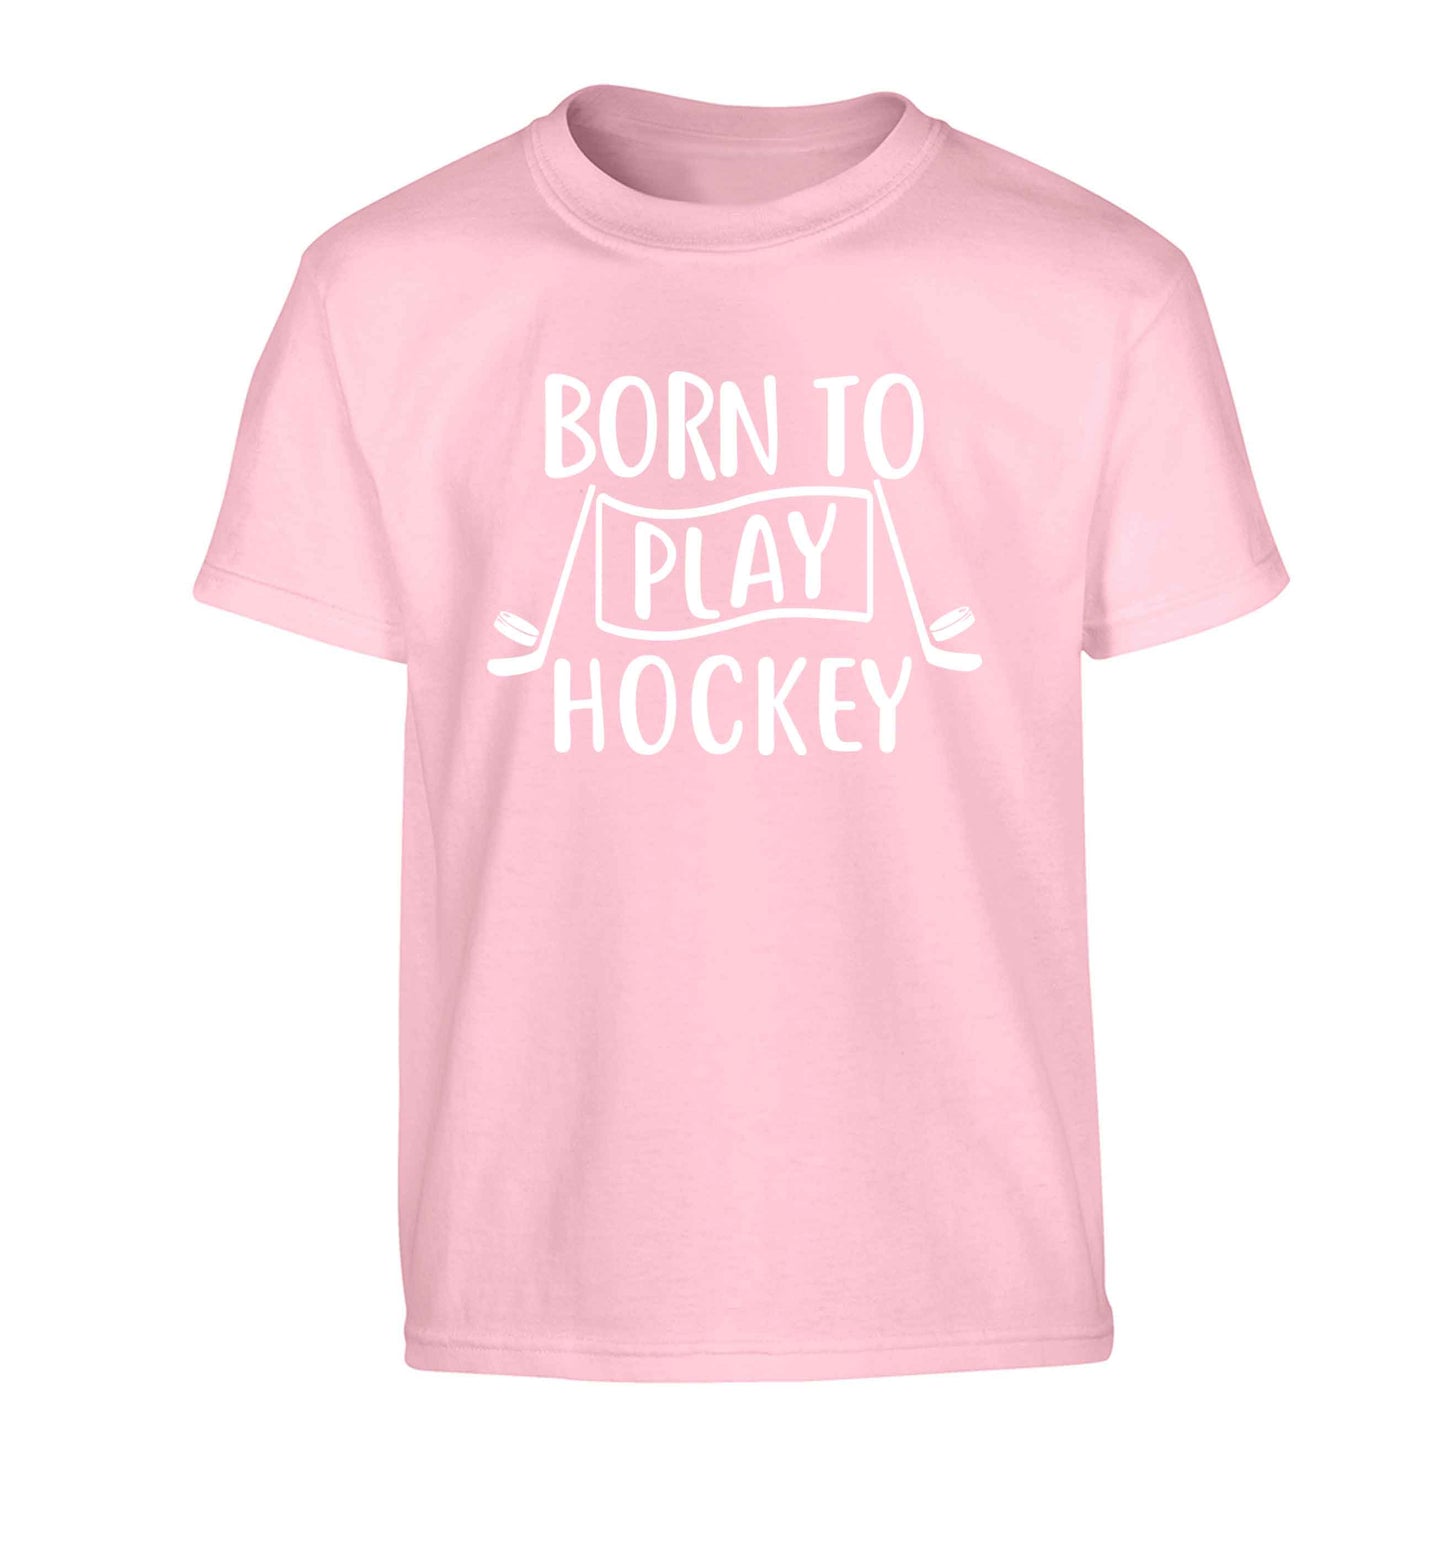 Born to play hockey Children's light pink Tshirt 12-13 Years